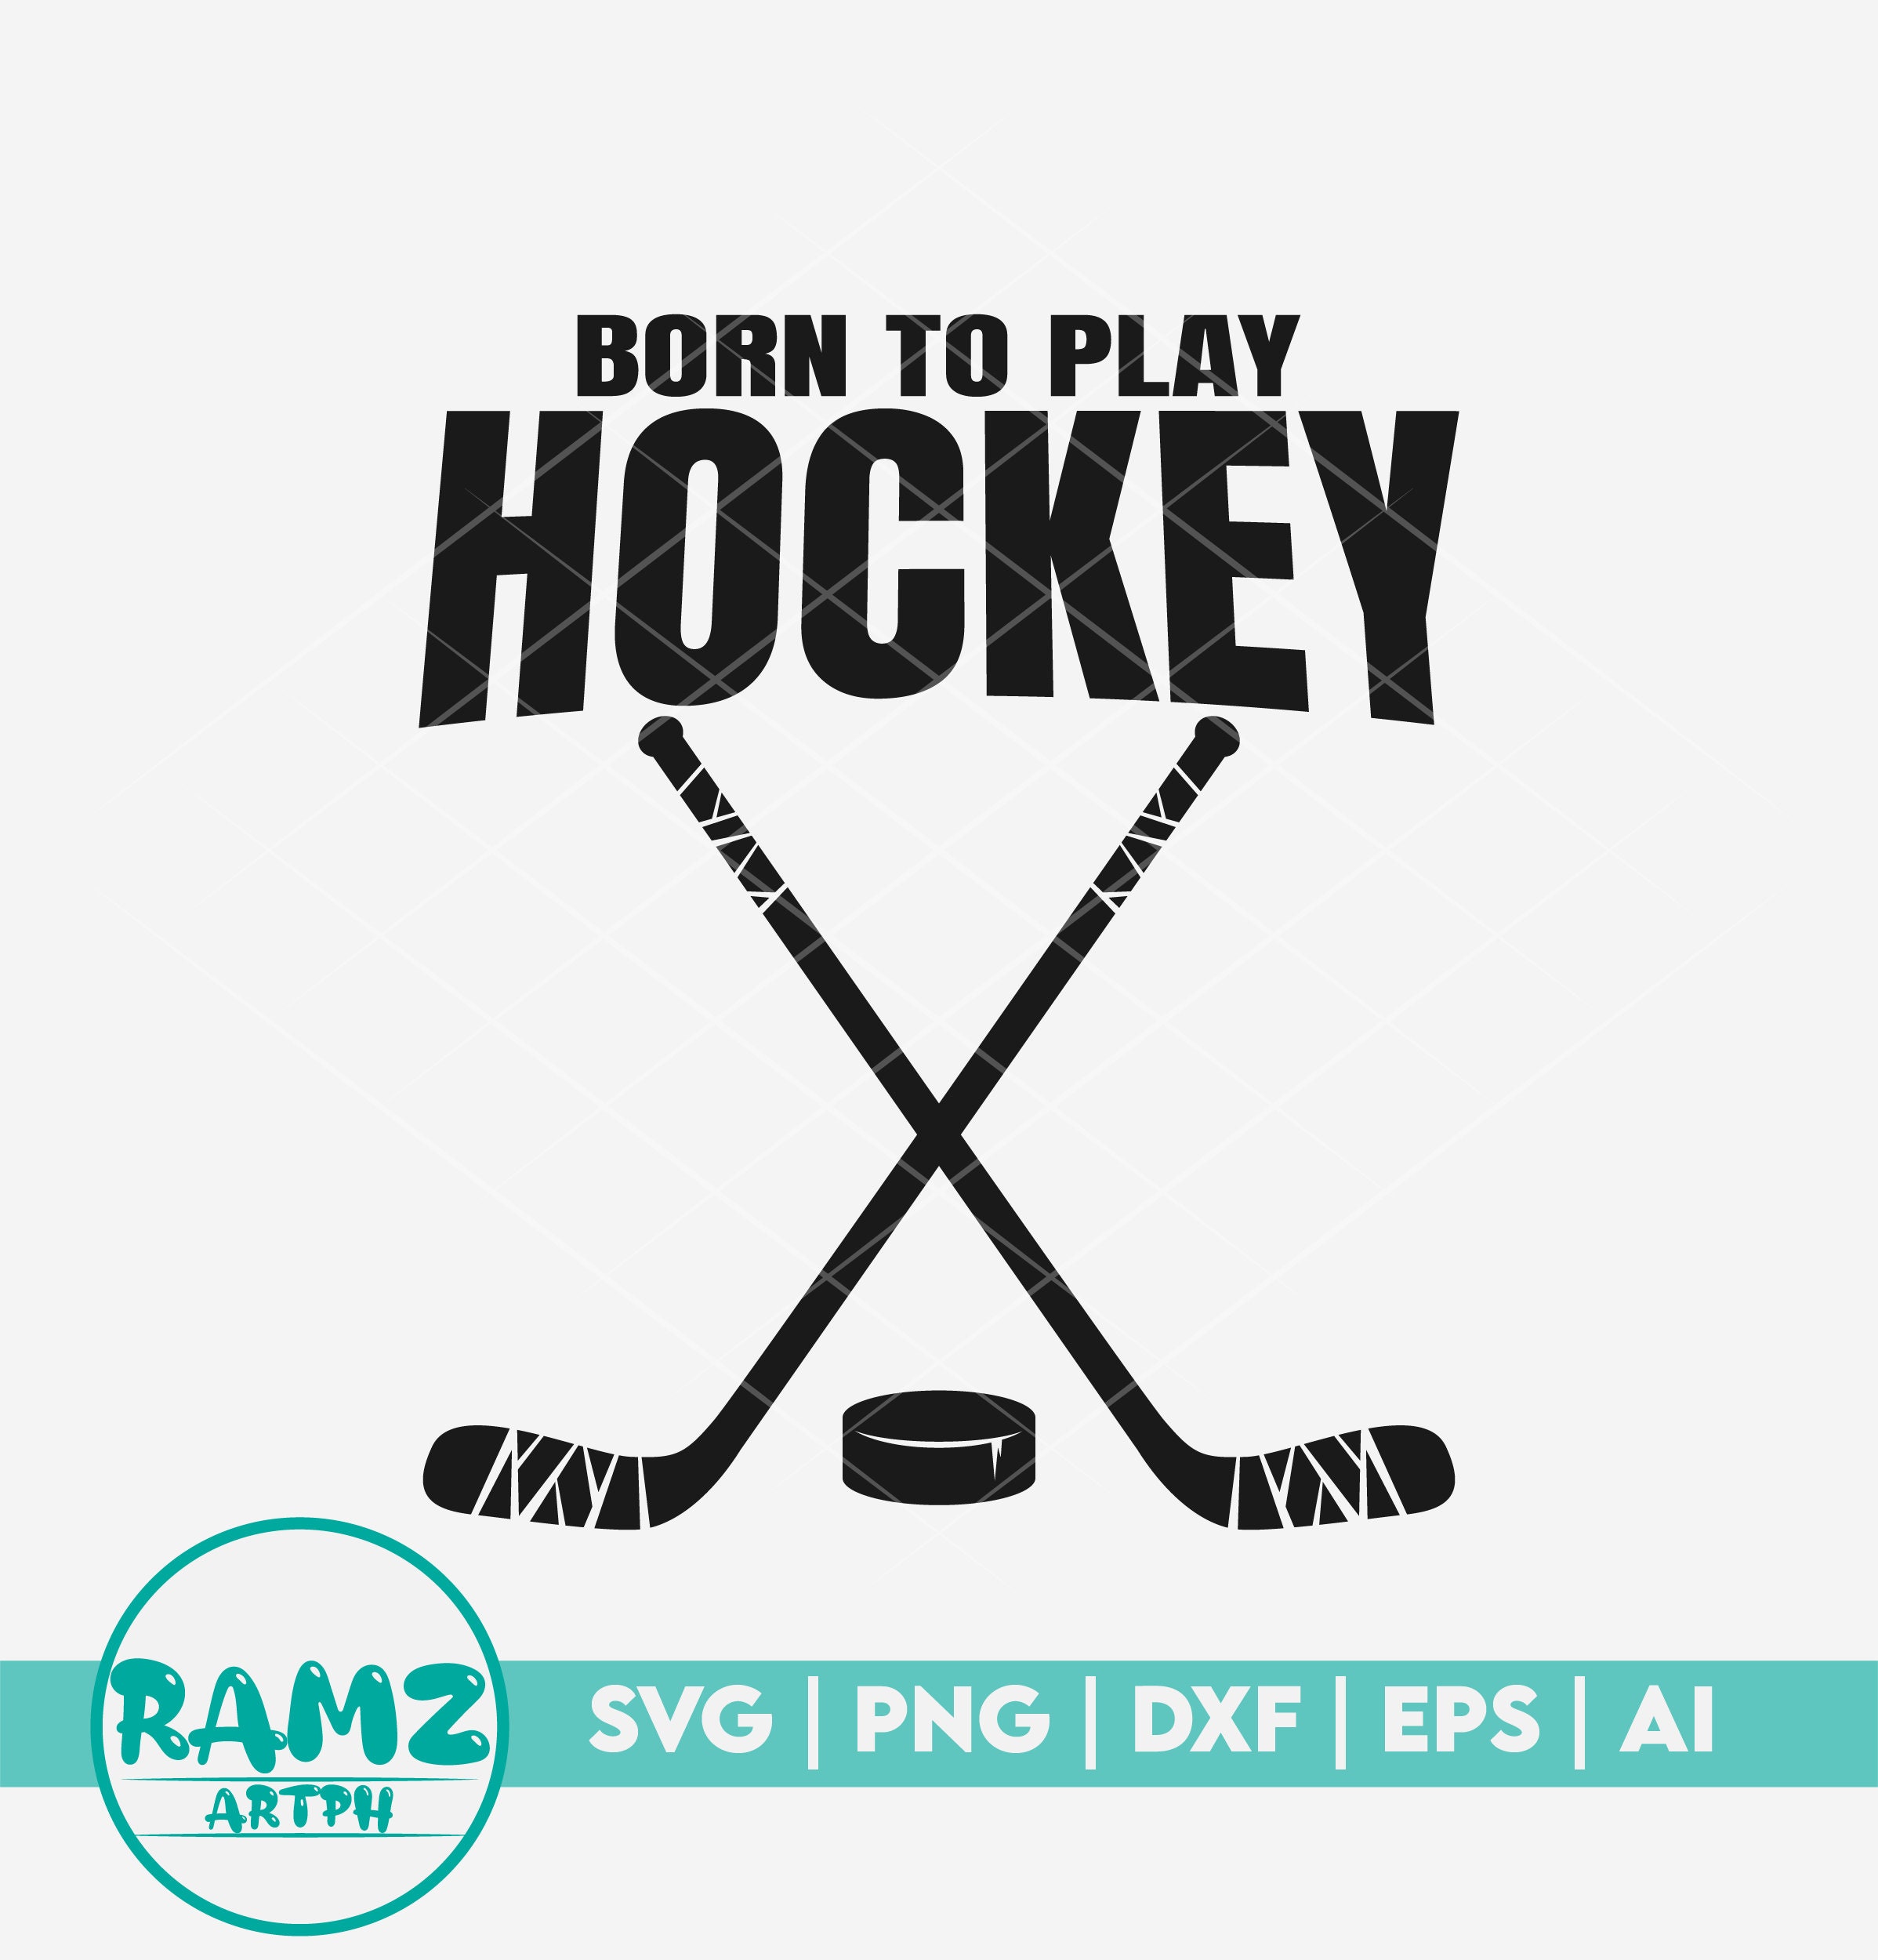 Hockey SVG File Born to Play Hockey Hockey Svg Hockey Stick